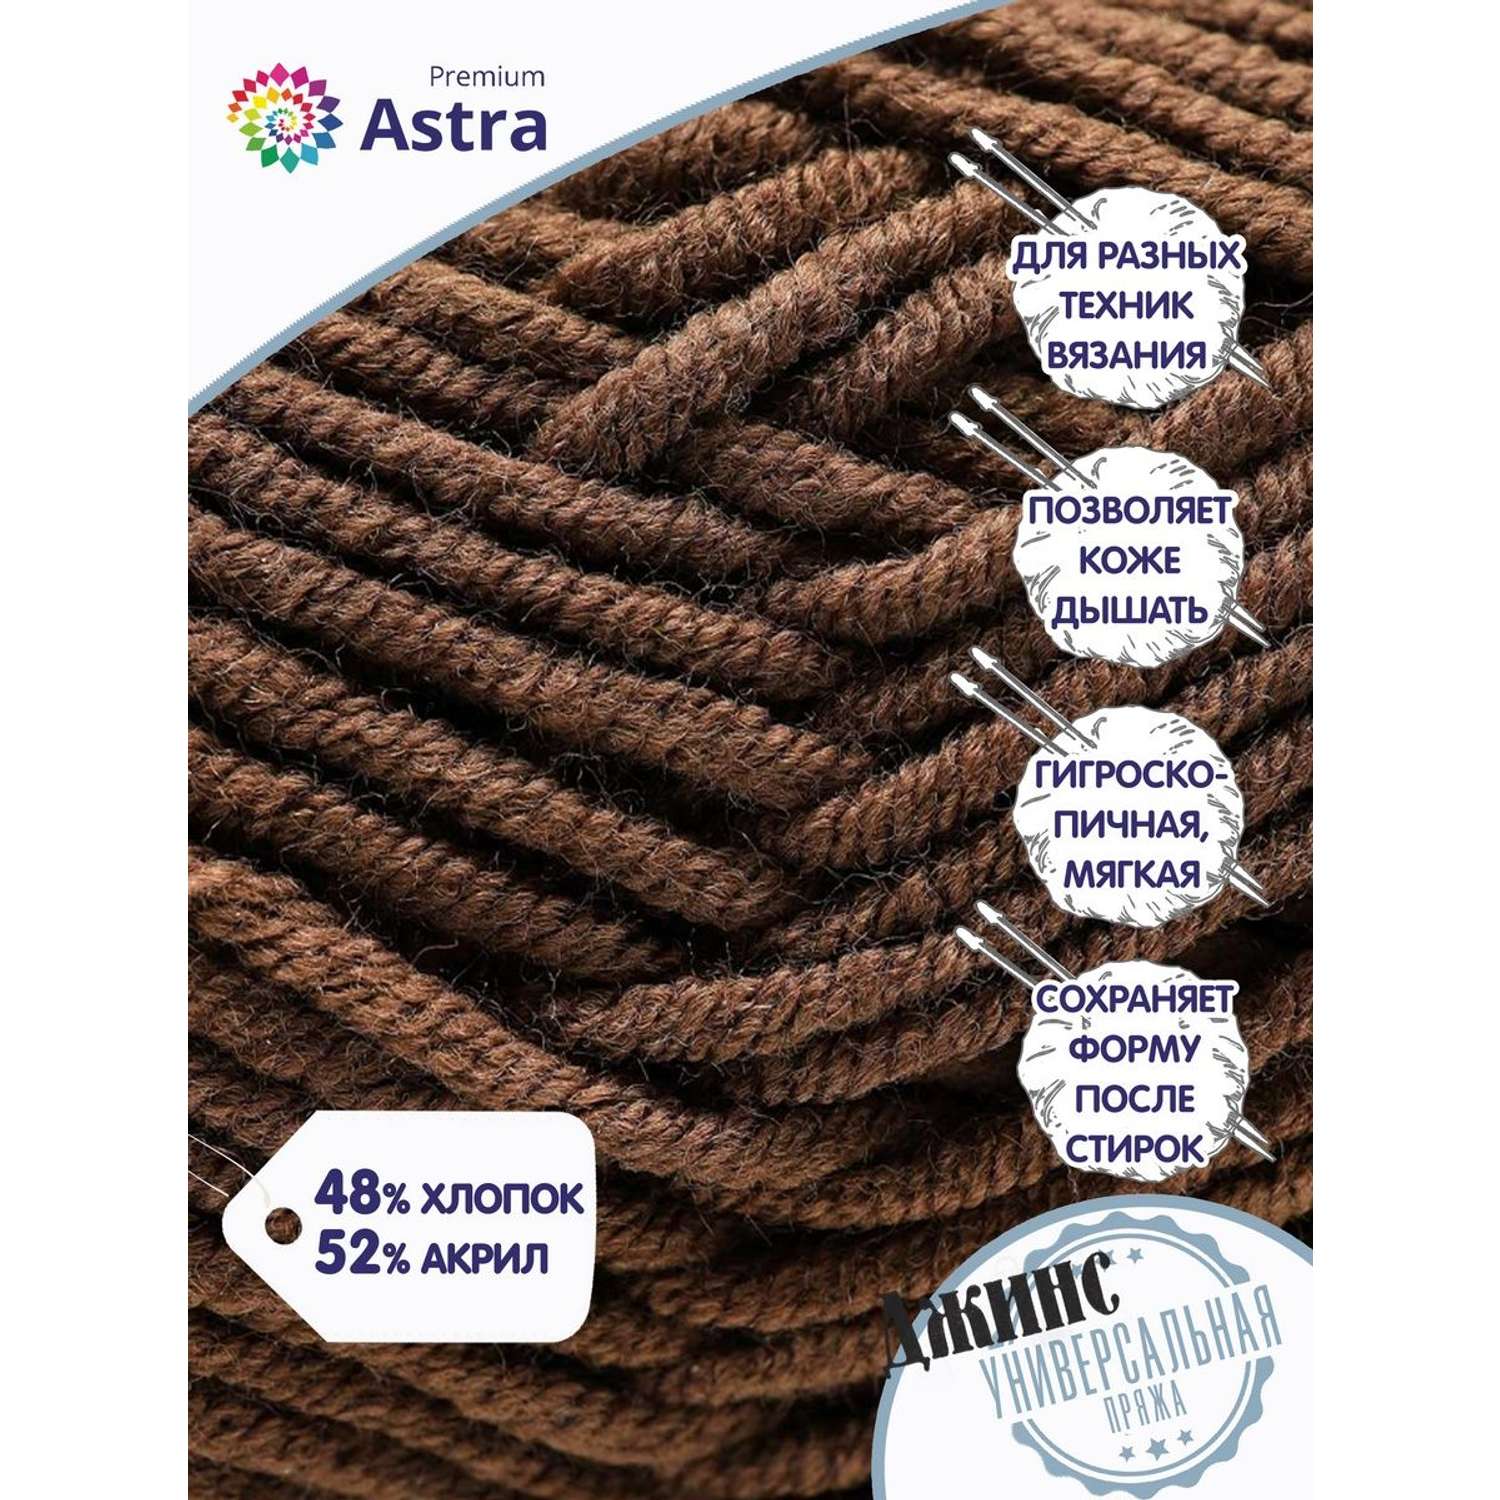 Пряжа для вязания Astra Premium джинс для повседневной одежды акрил хлопок 50 гр 135 м 850 коричневый 4 мотка - фото 2